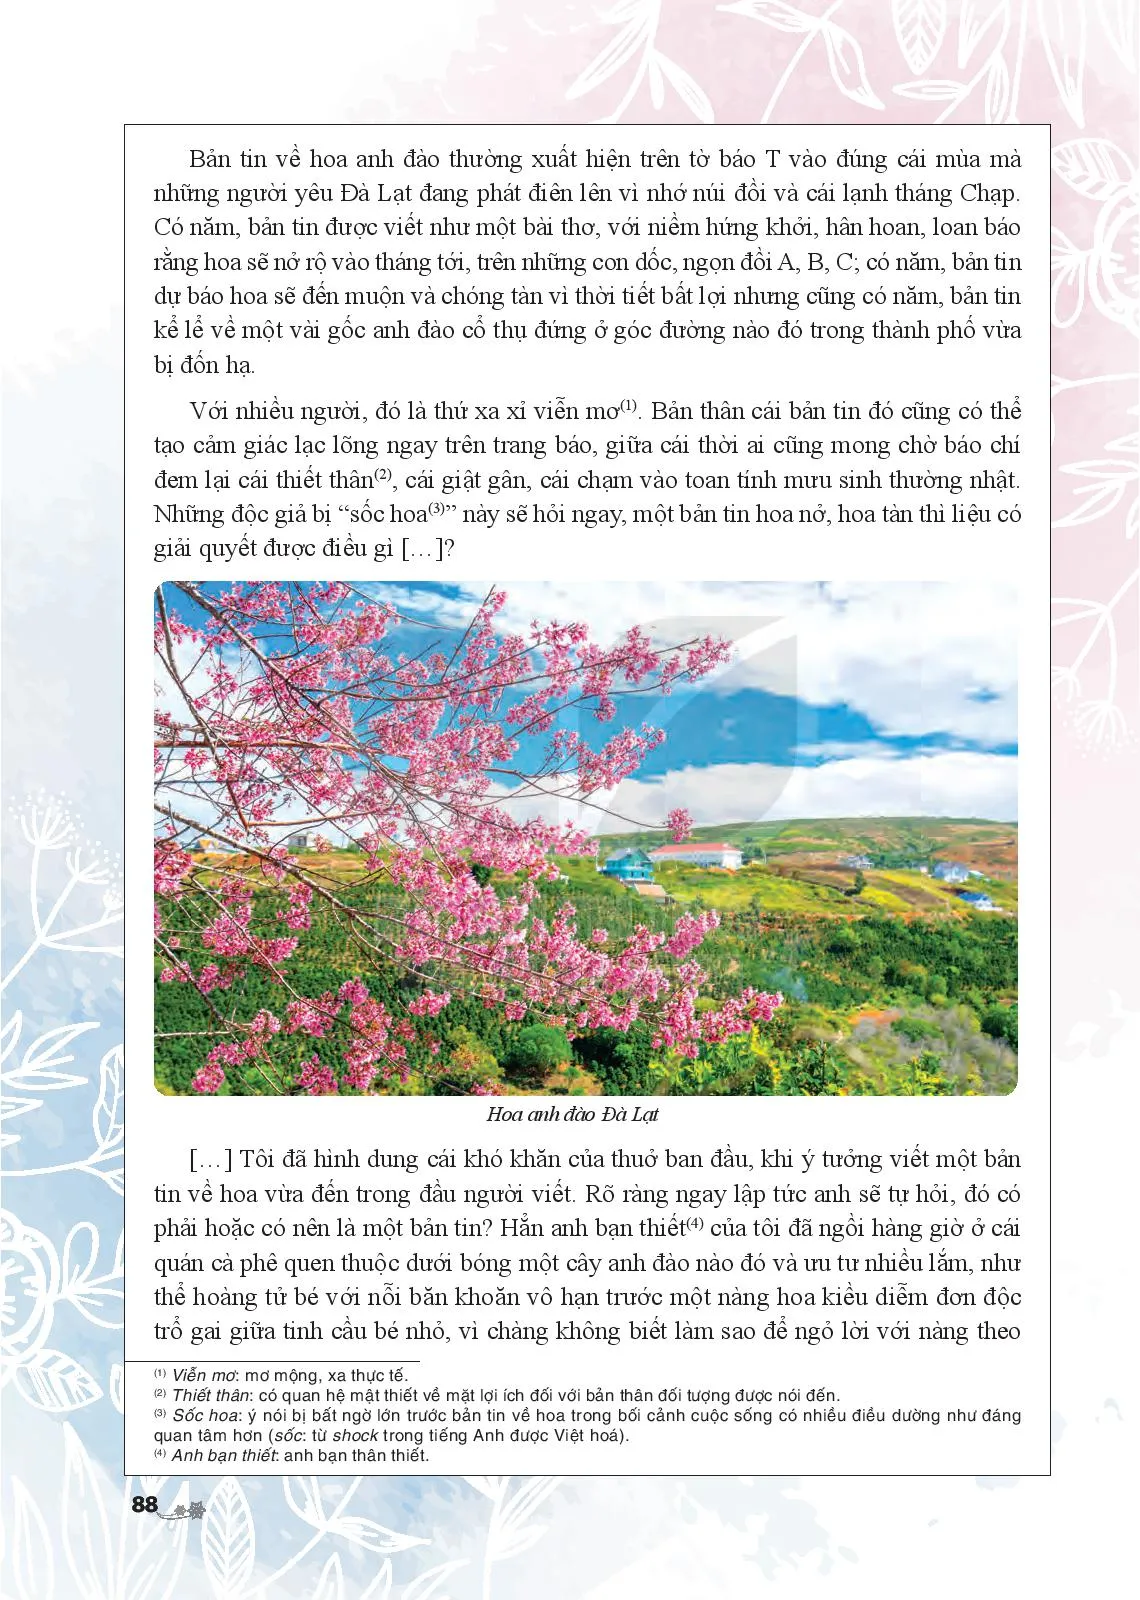 Bản tin về hoa anh đào (Nguyễn Vĩnh Nguyên)